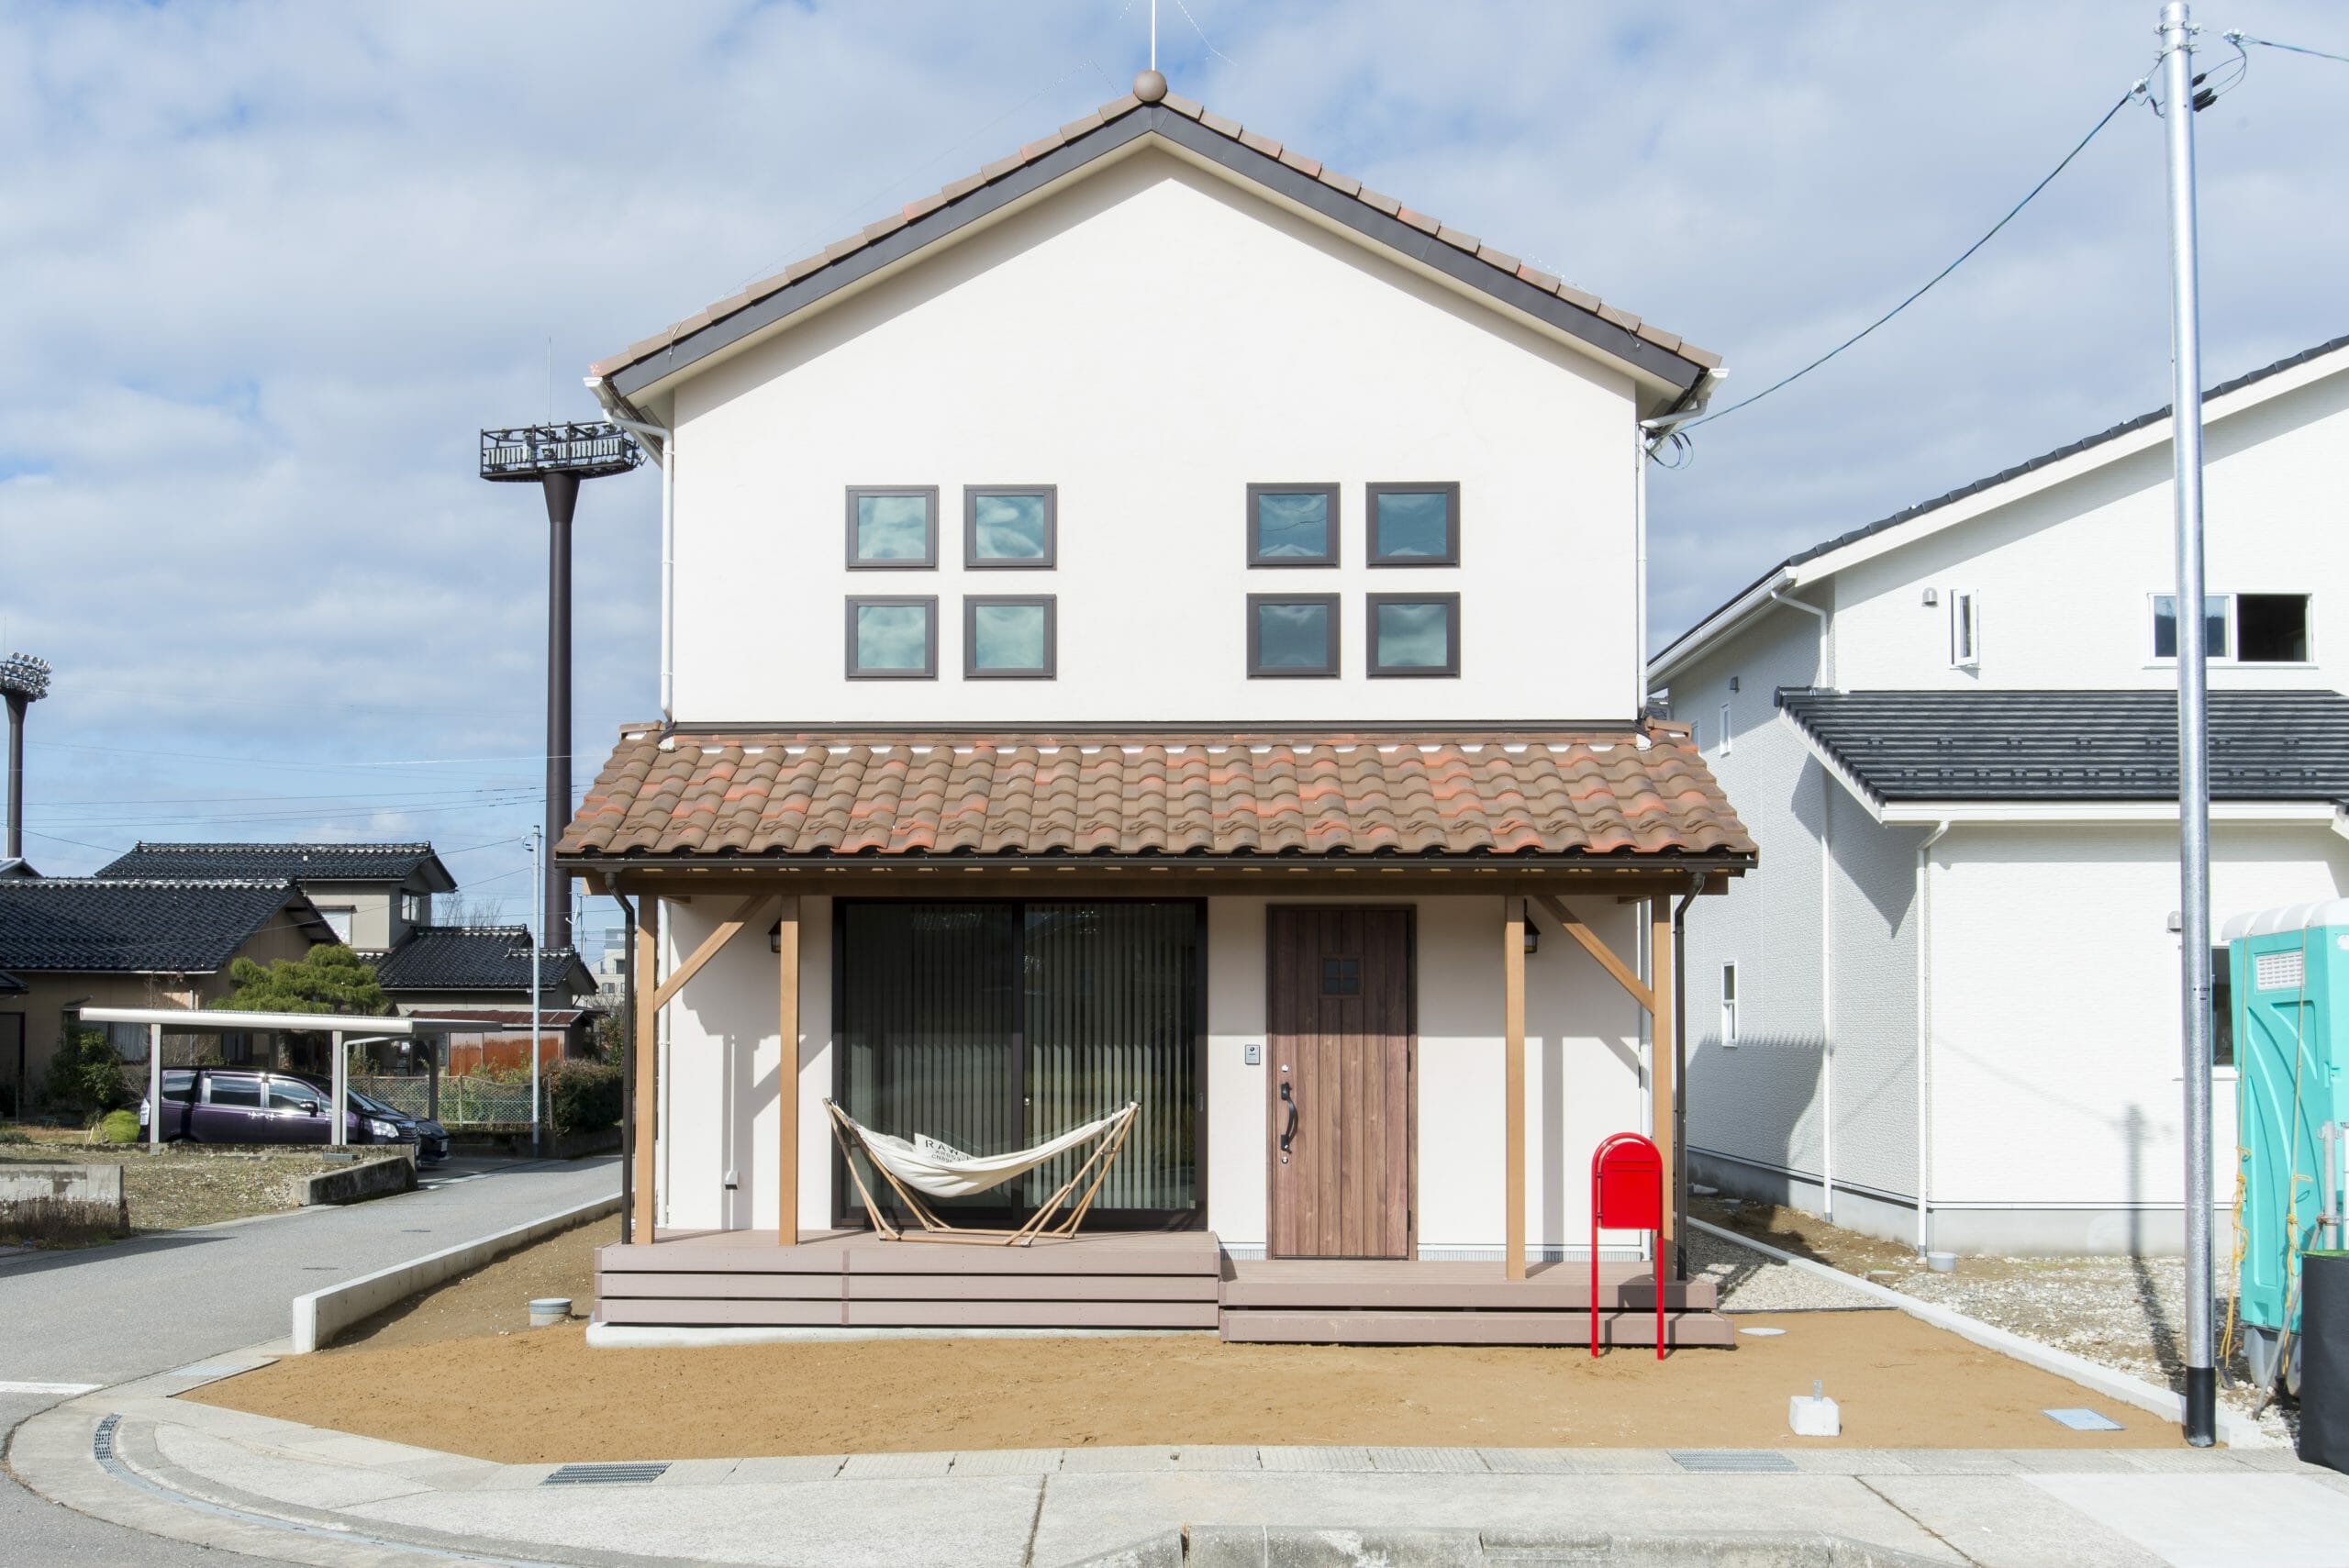 大人かわいいカフェ風な家 施工実例 富山 石川の新築 注文住宅ならオダケホーム